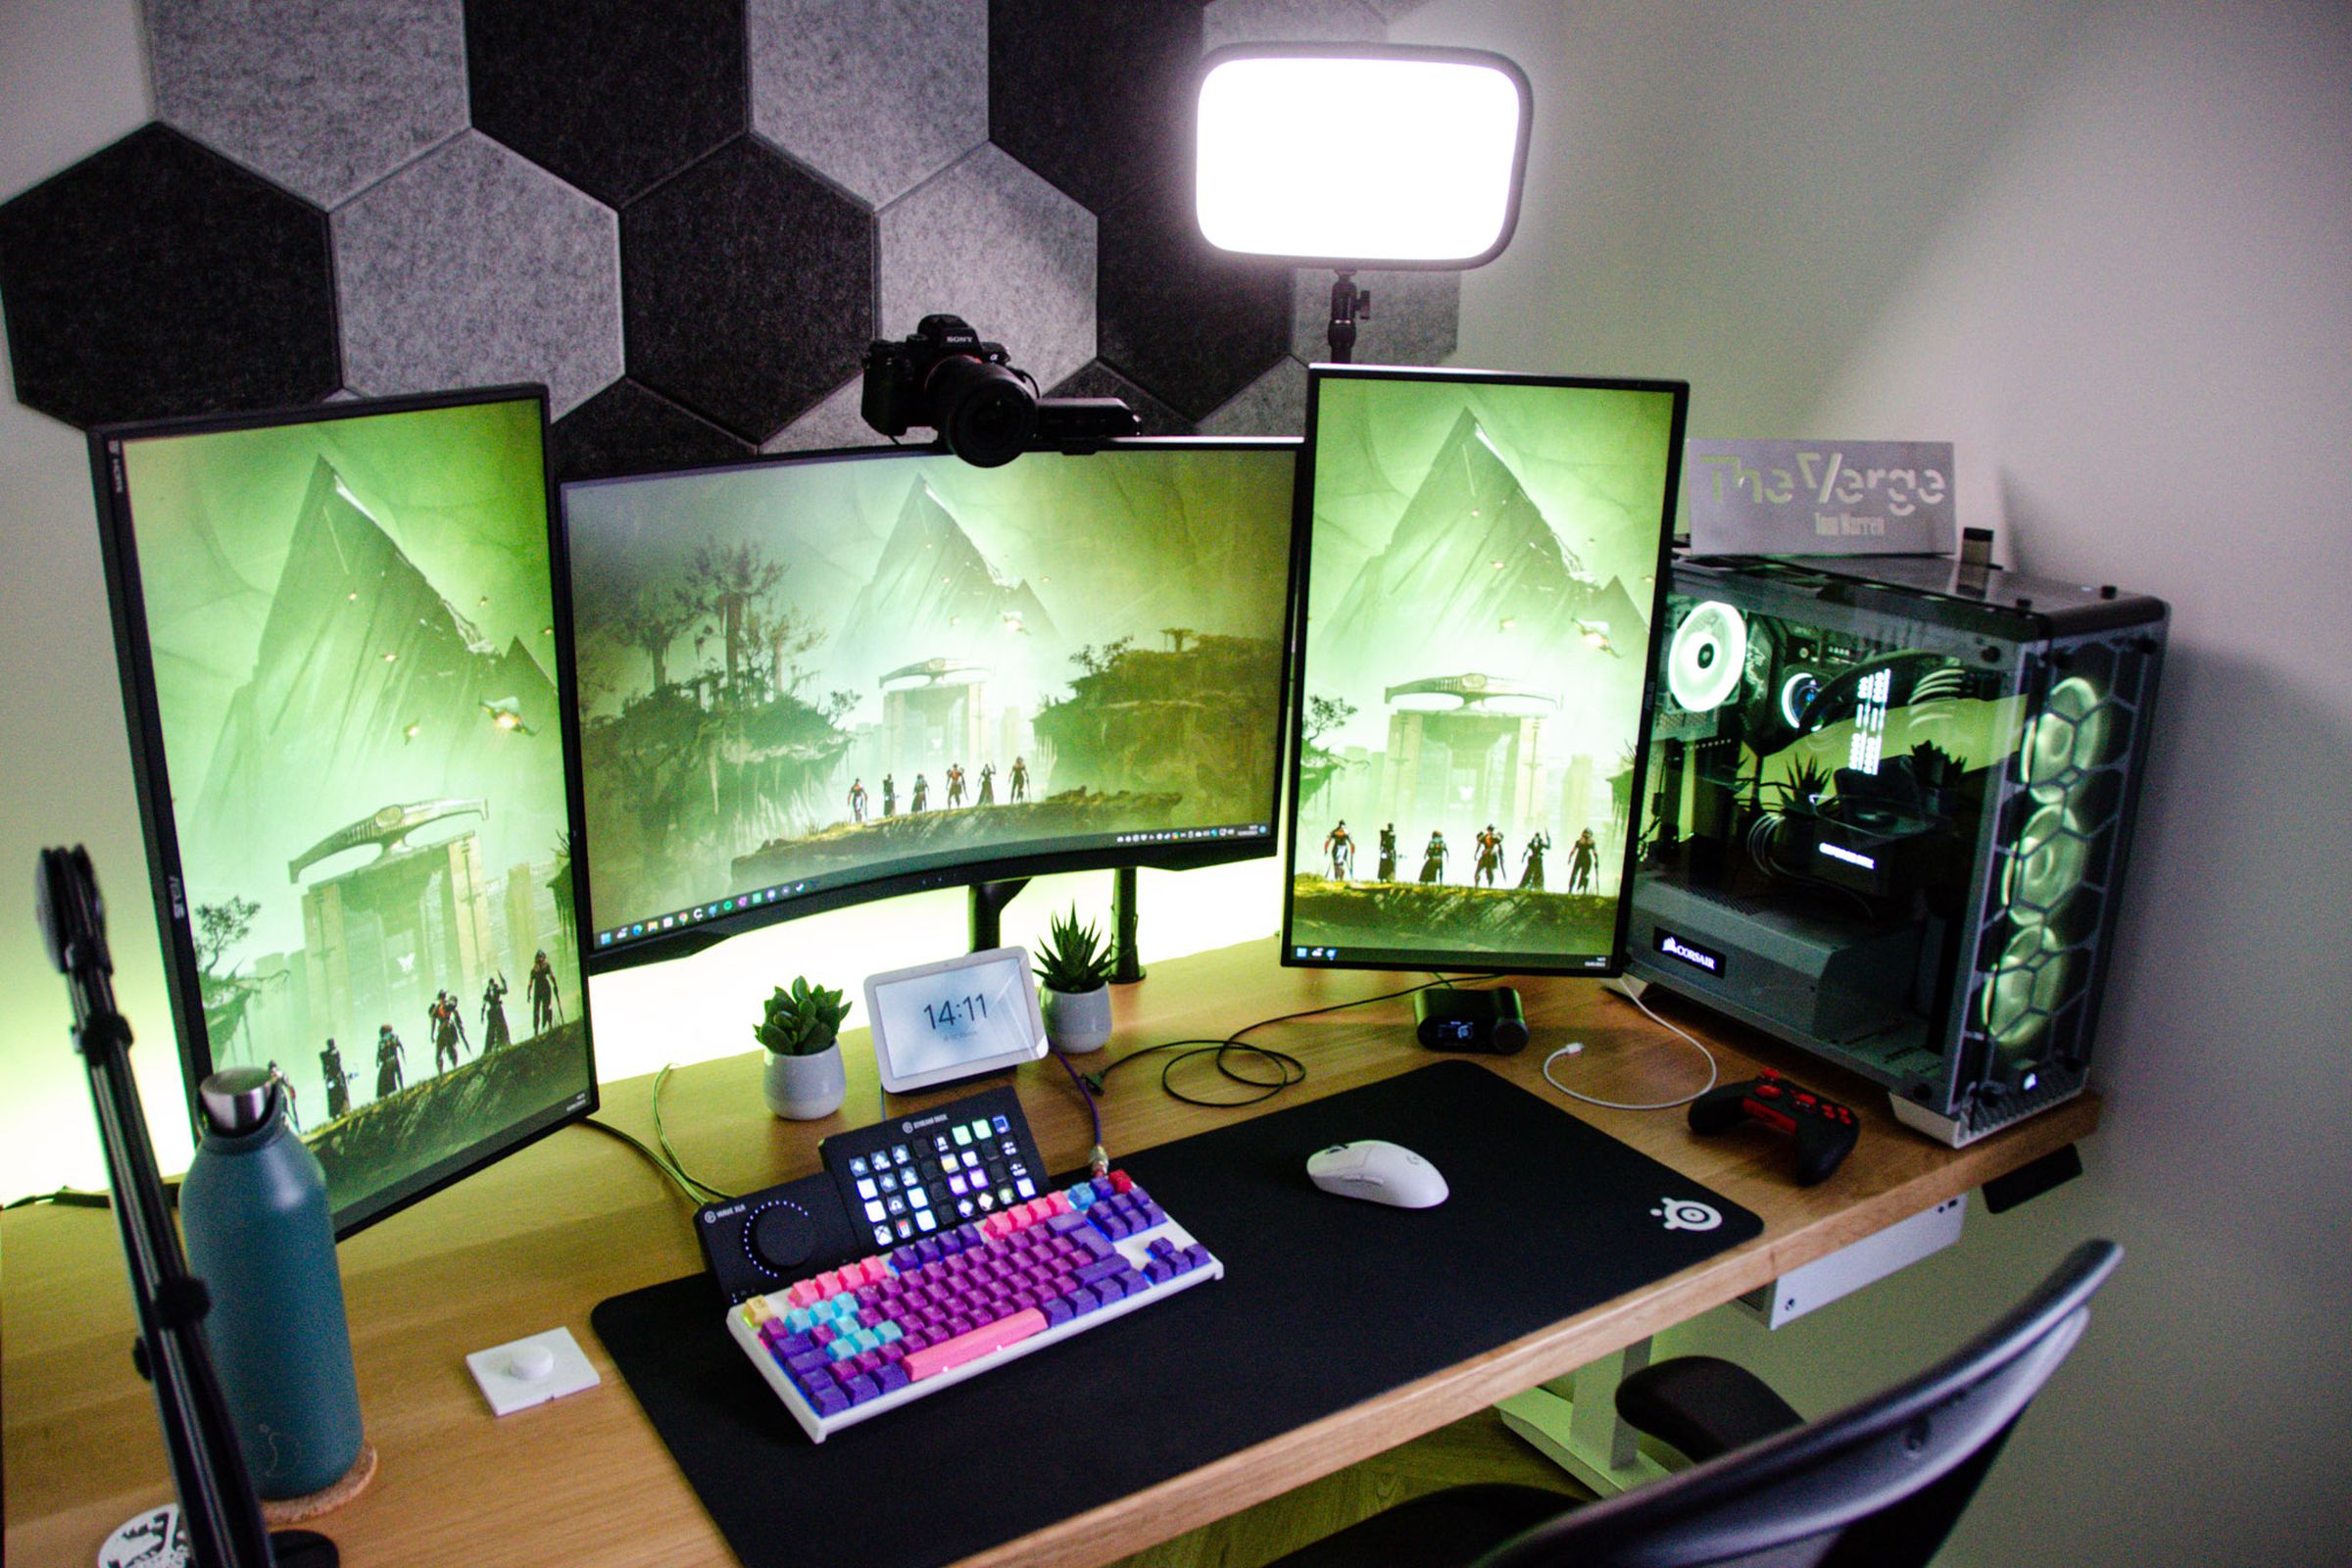 Widok z góry biurka z trzema monitorami, kolorową klawiaturą pośrodku, komputerem po prawej stronie i różnymi innymi urządzeniami.